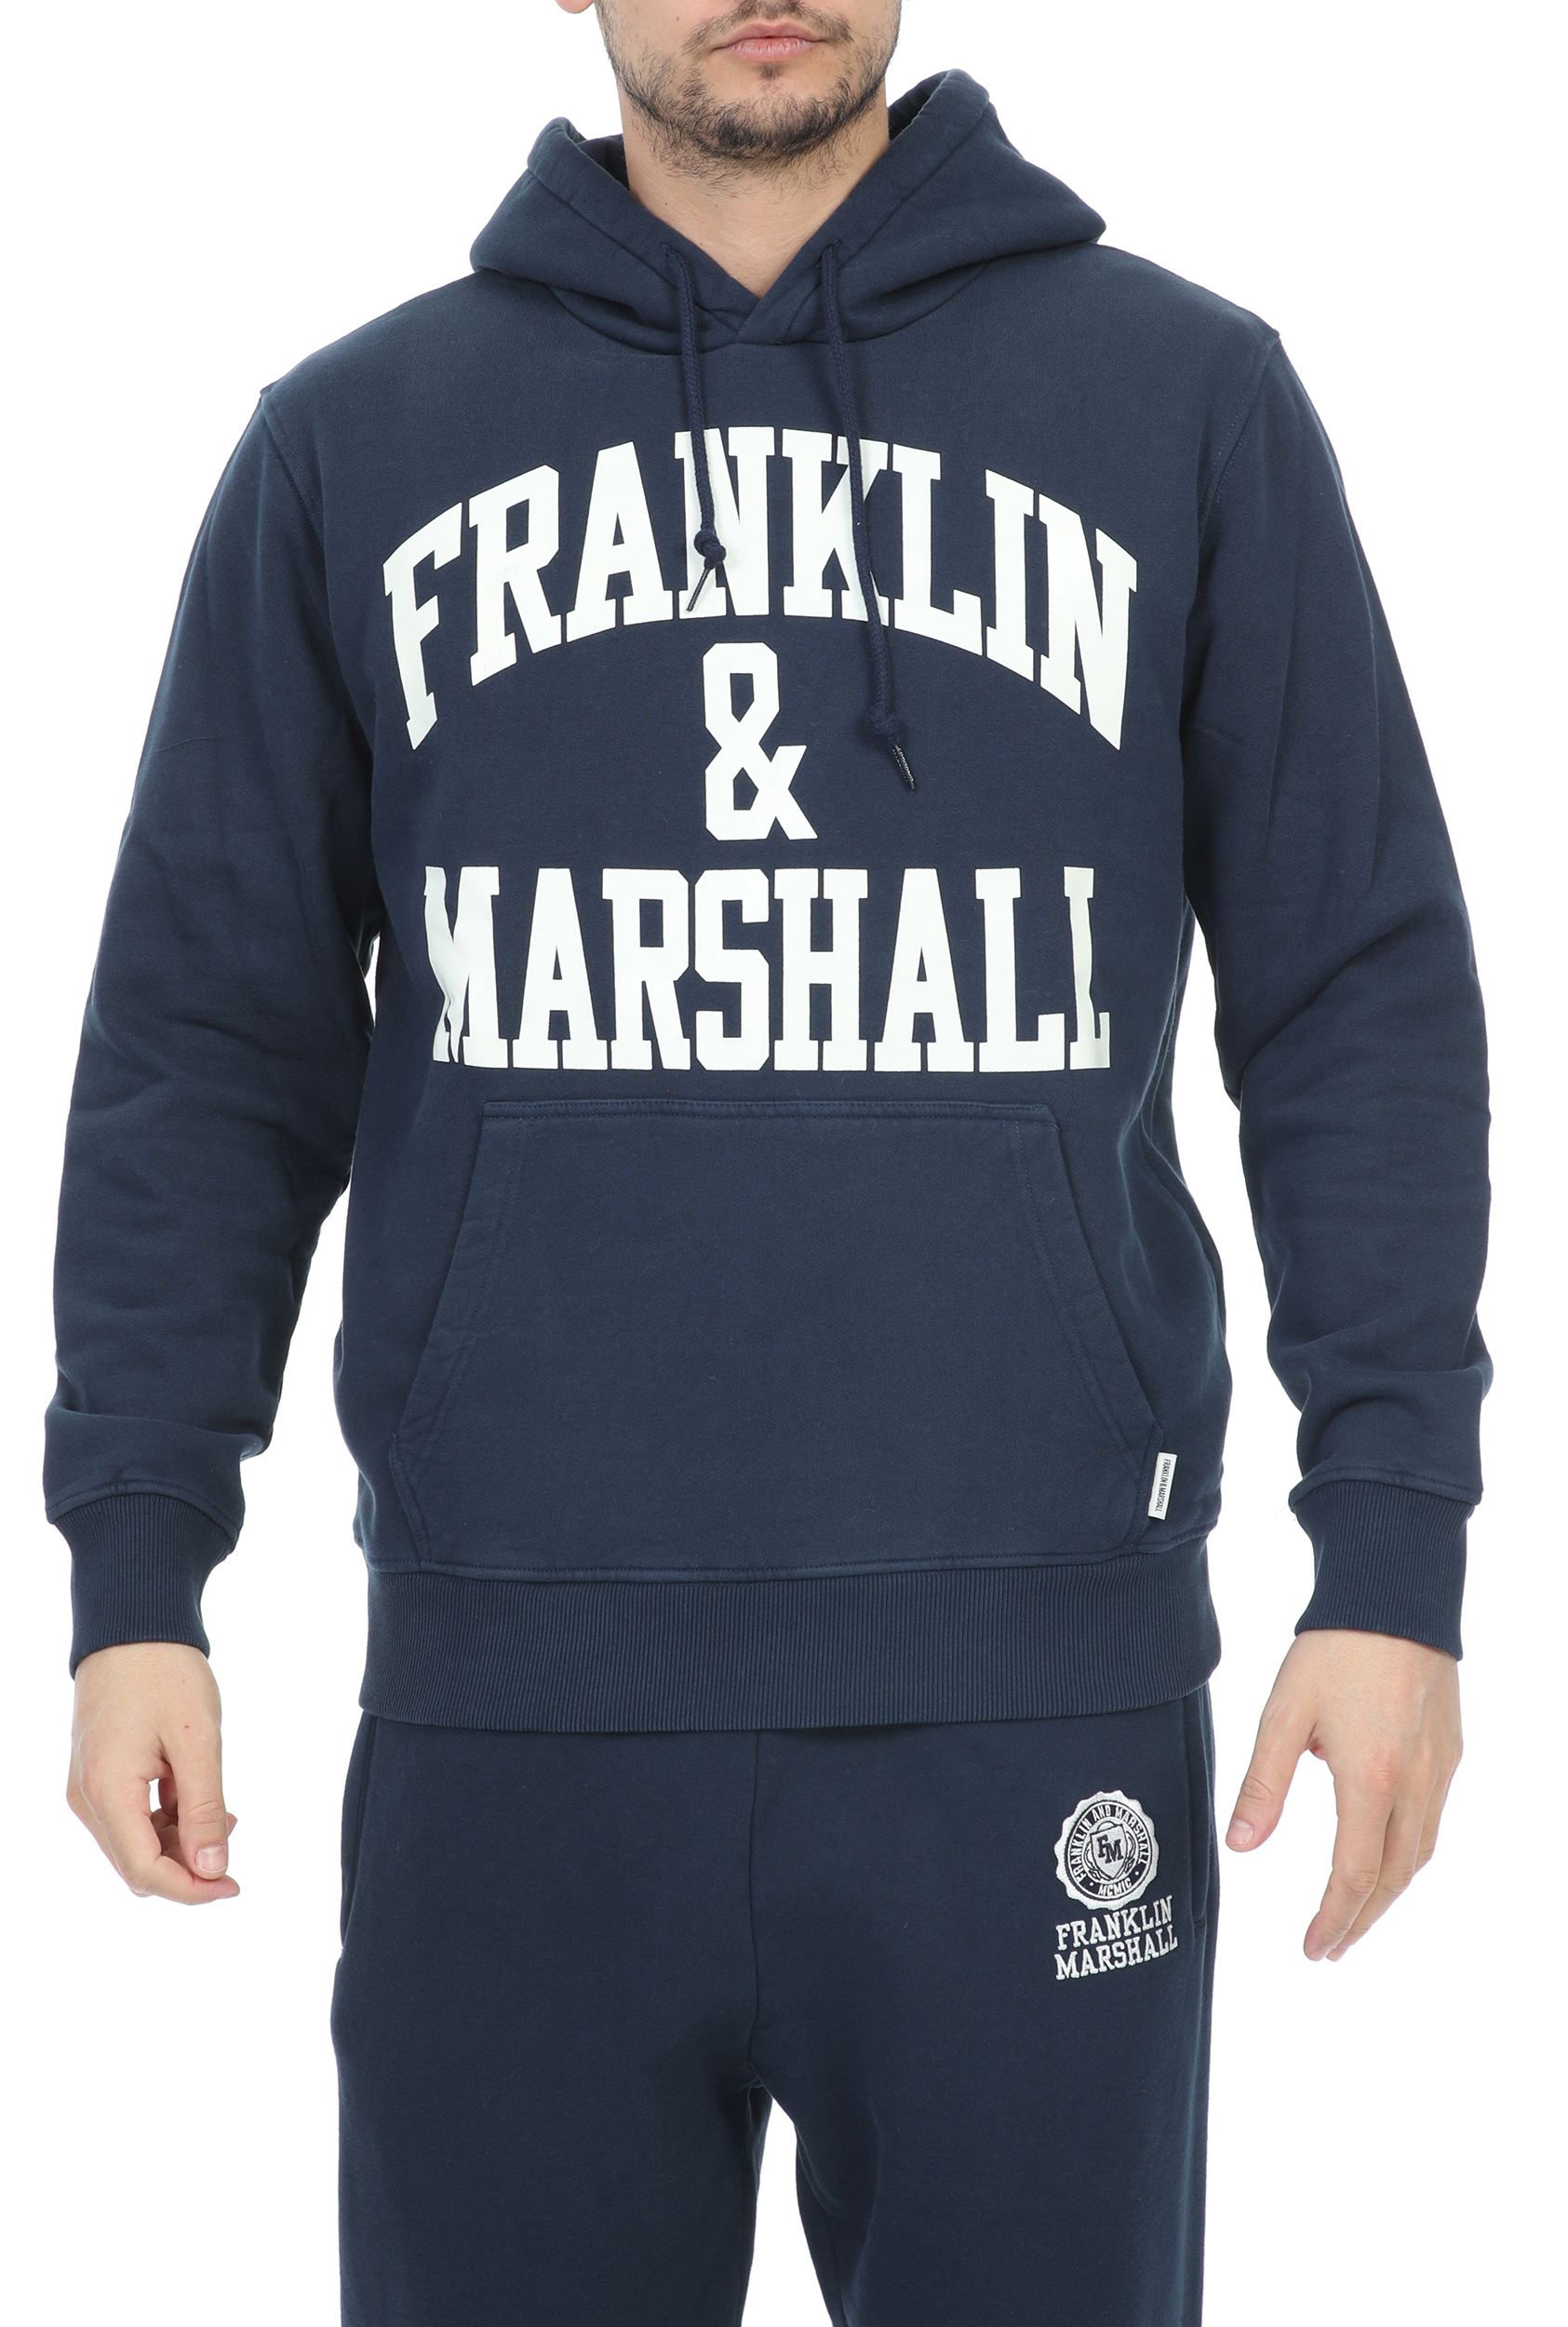 FRANKLIN & MARSHALL – Ανδρικη φουτερ μπλουζα FRANKLIN & MARSHALL BRUSHED COTTON FLEE μπλε